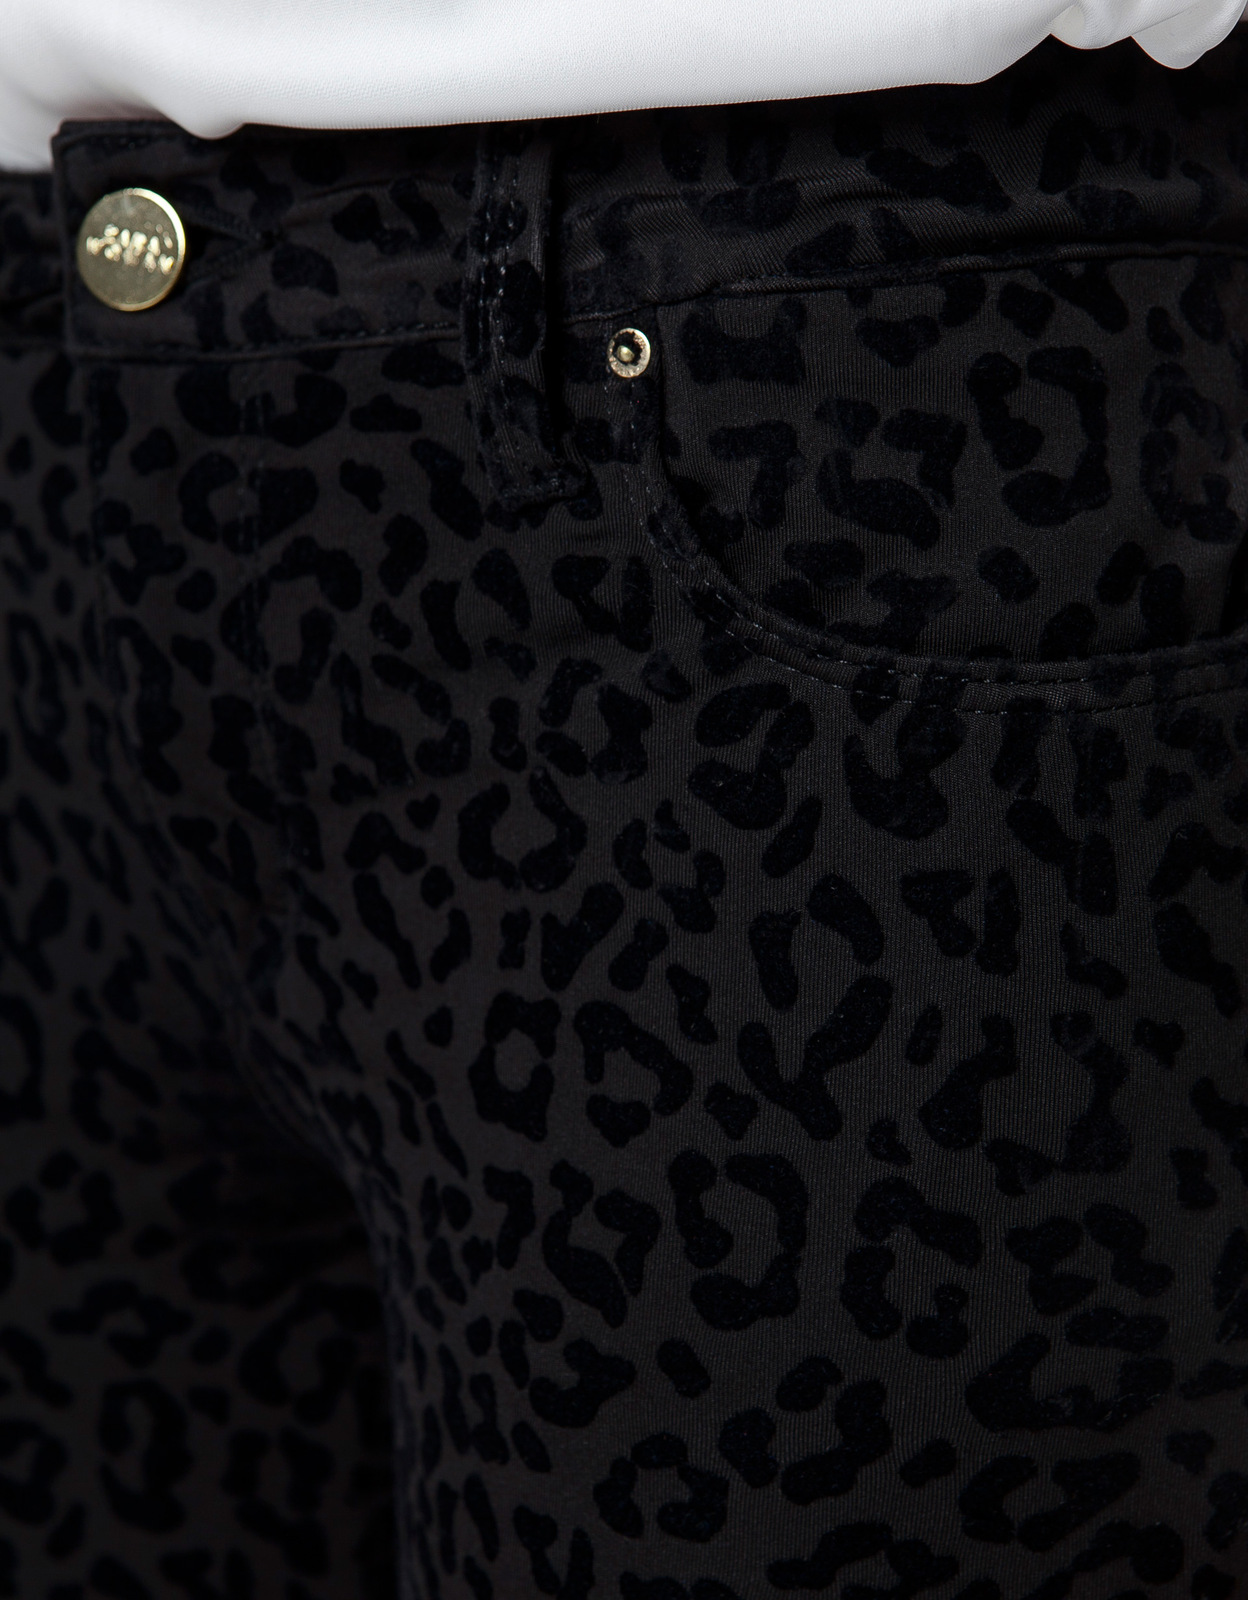 Zara fekete leopárdmintás nadrág 2012.10.21 fotója